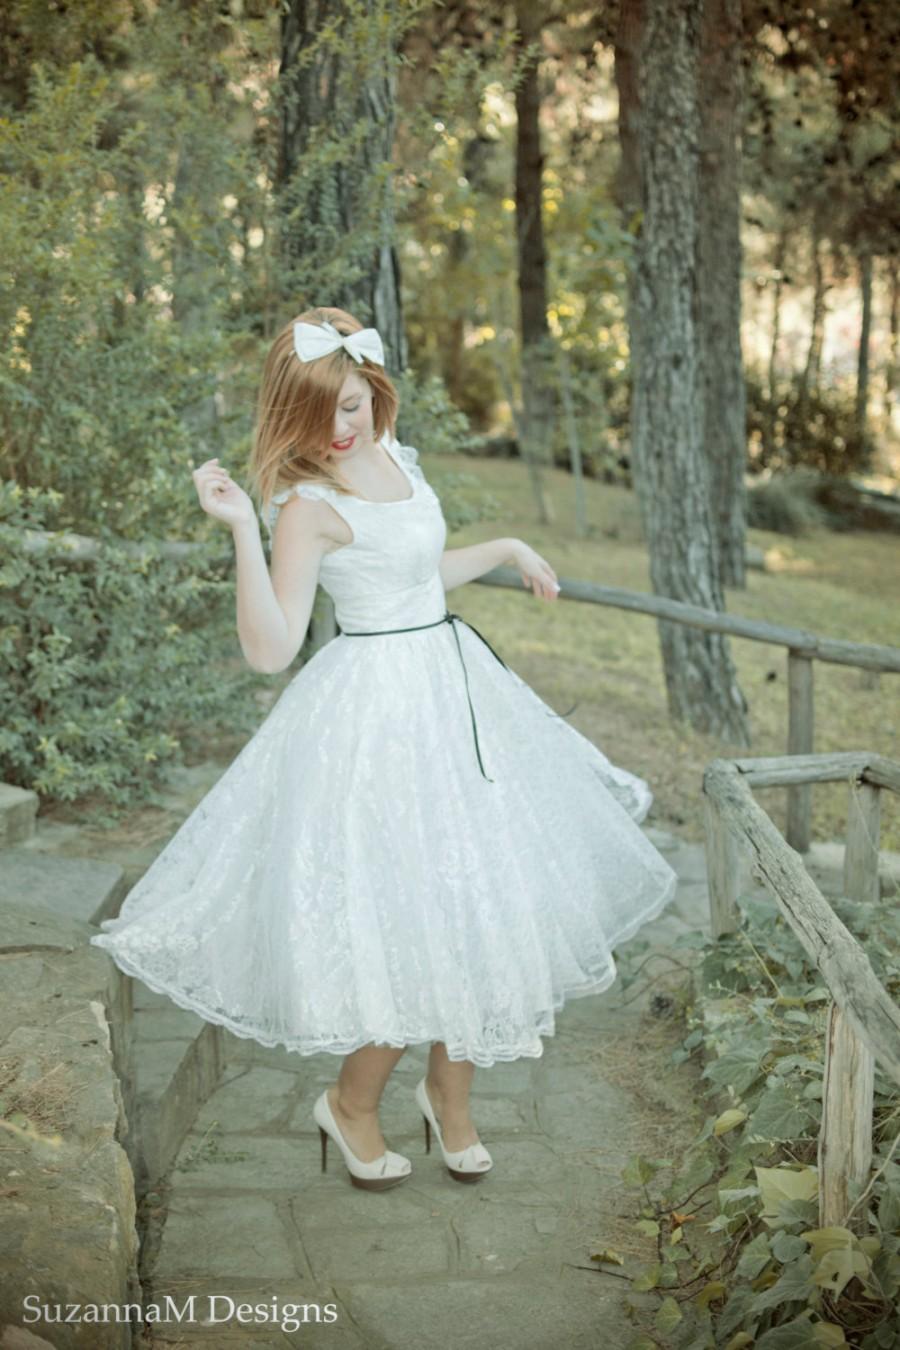 زفاف - Ivory 50s Wedding Dress Full Skirt Original 50s Style Bridal Dress Sleevles Tea Length Dress - Handmade by SuzannaM Designs